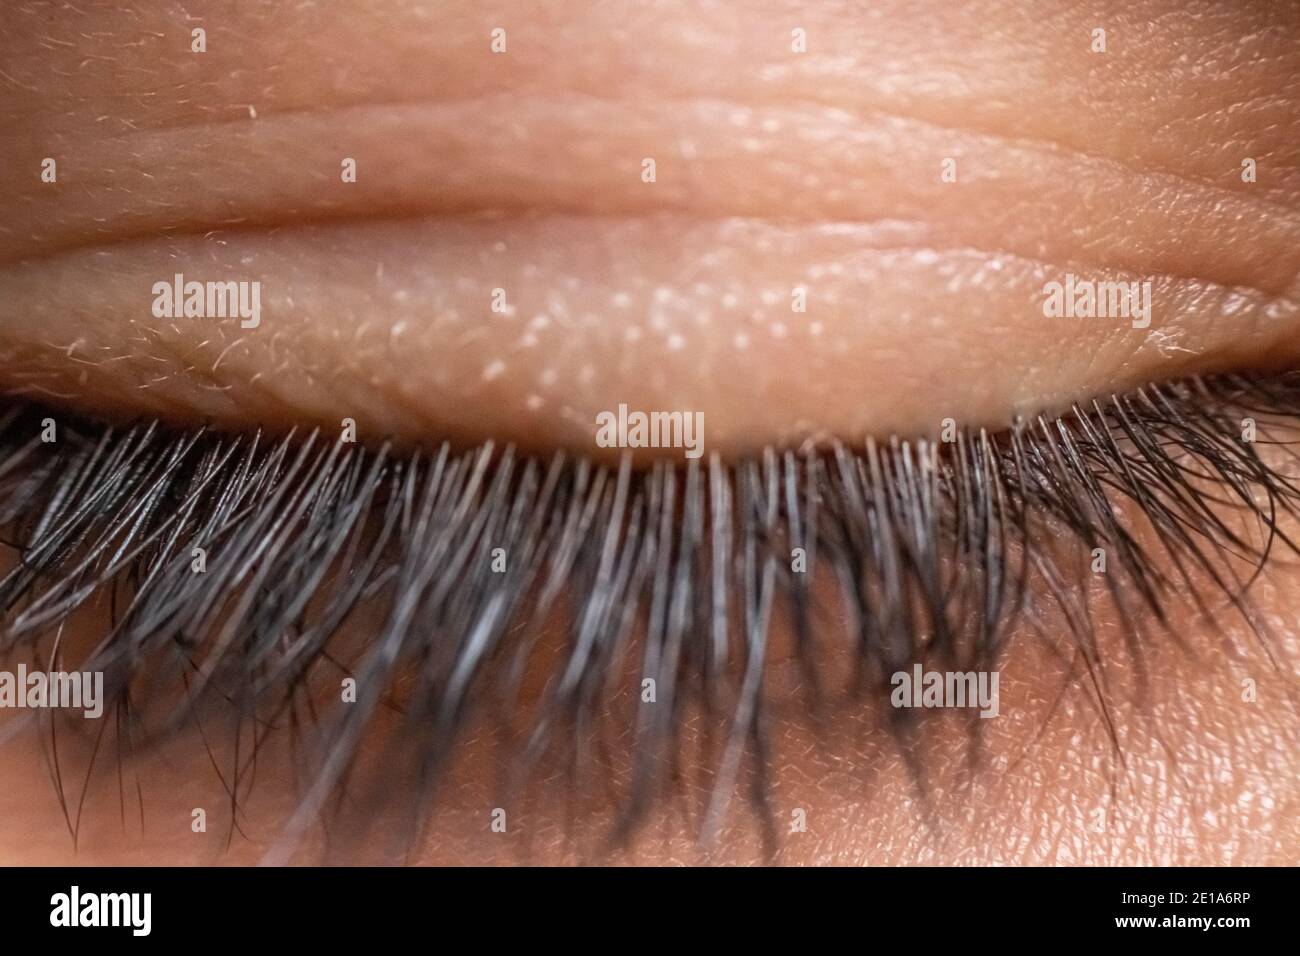 Un closeup di una ragazza bianca chiuso occhio che mostra il suo ciglia lunghe Foto Stock